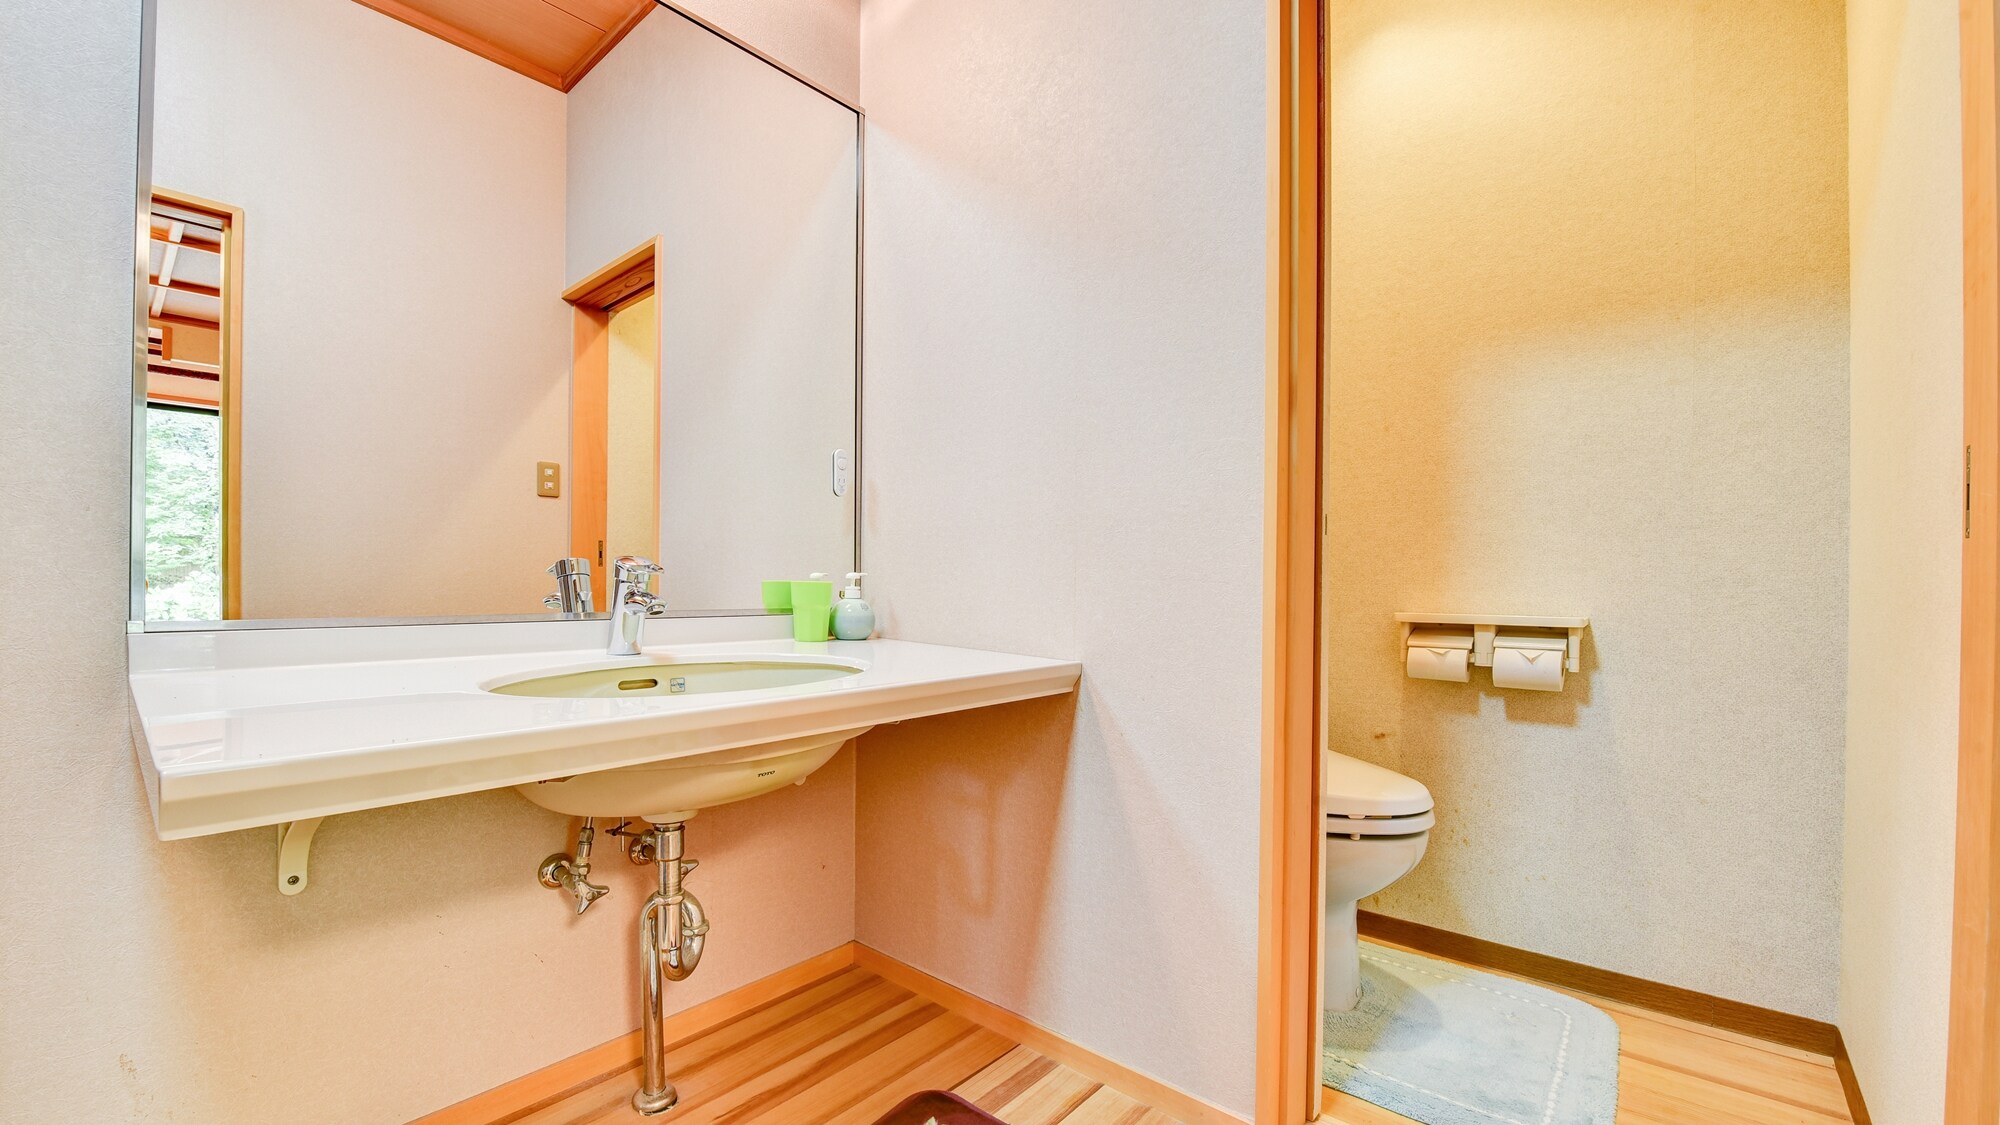 * ■ 日式房間 10 張榻榻米（示例） ■ 帶洗臉盆和馬桶的房間